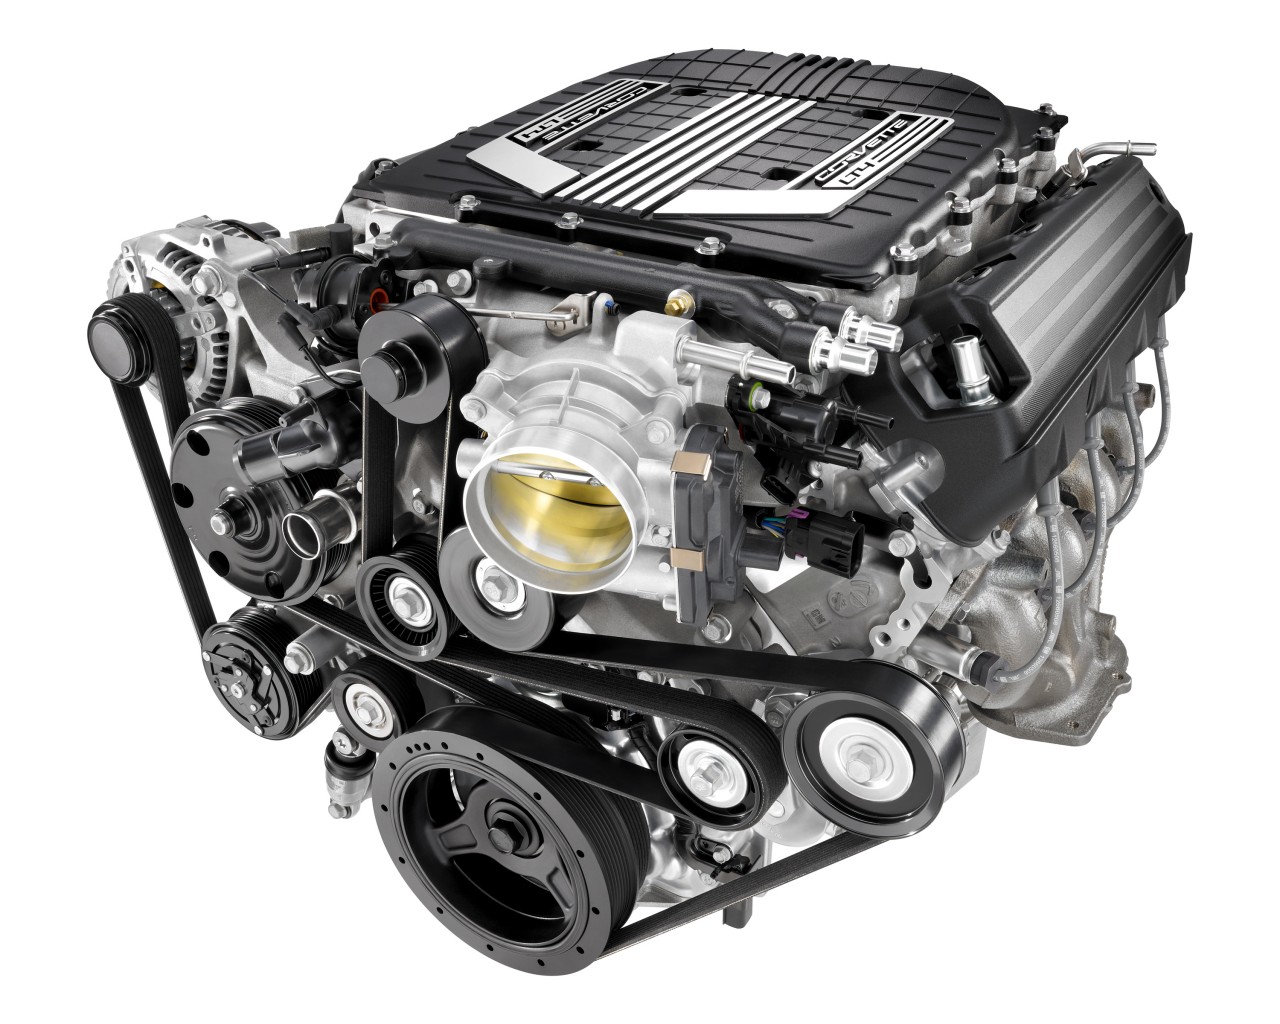 650 HP For Next Camaro ZL1? | MotorWeek